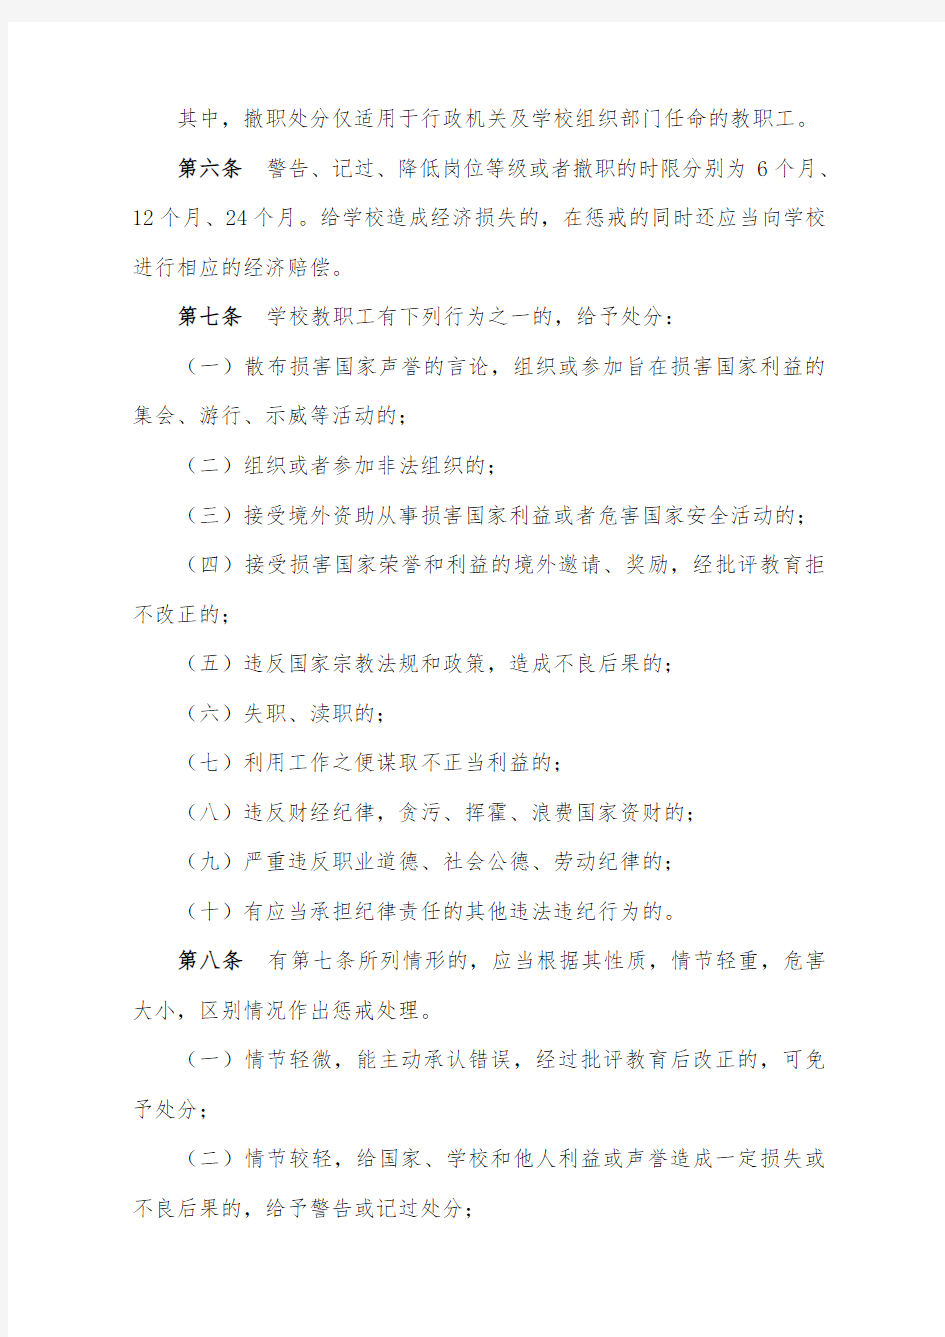 上海财经大学教职工行政处分管理规定试行